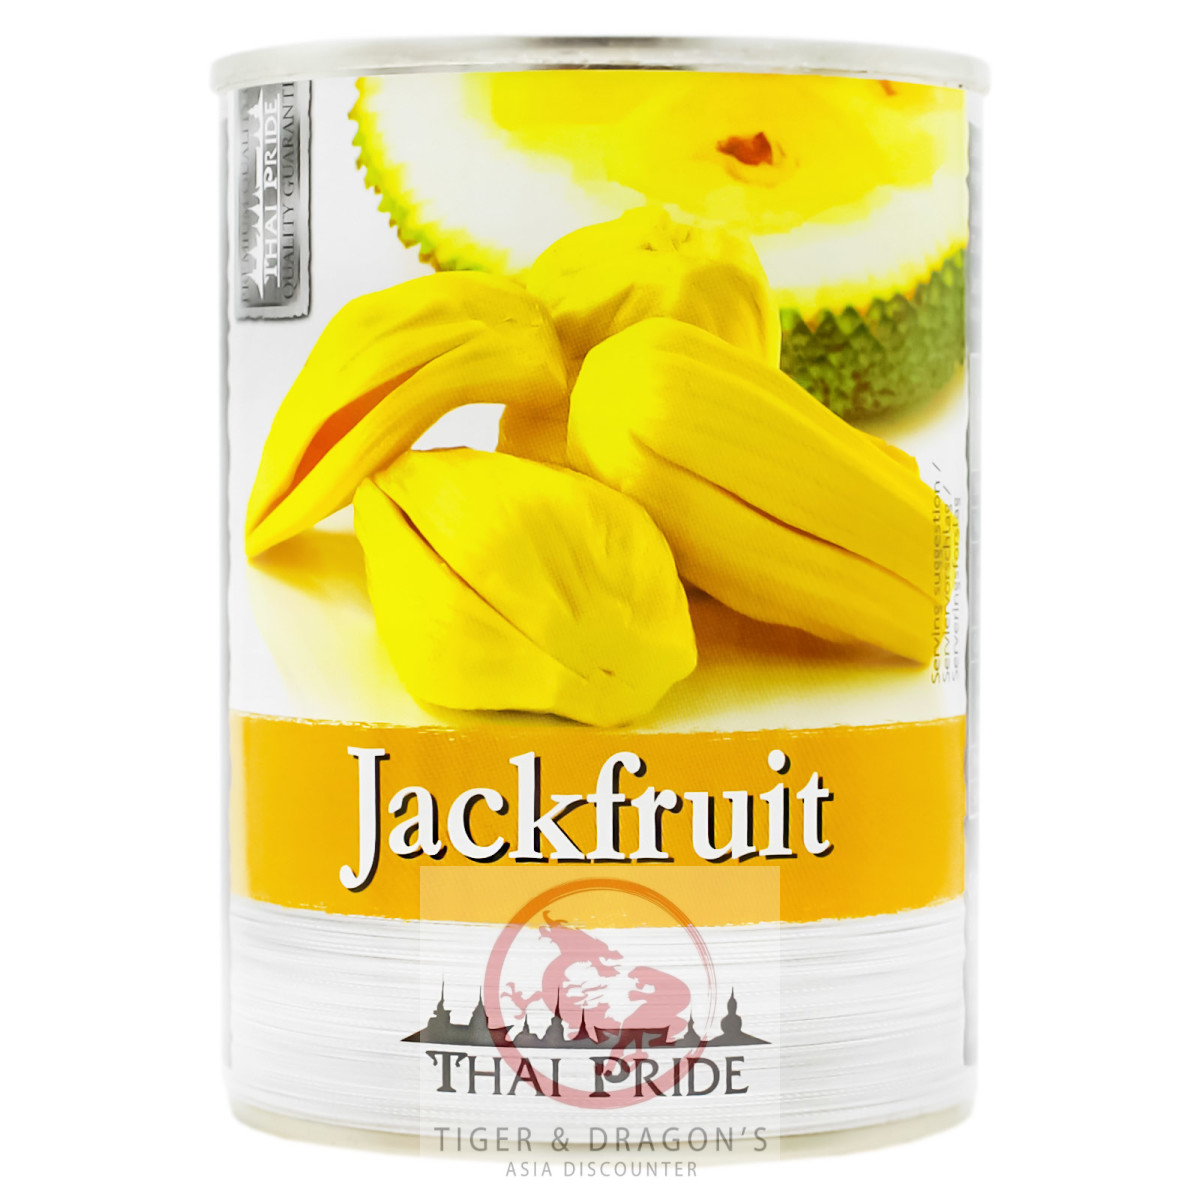 Thai Pride Jackfruit gezuckert 565g/230g